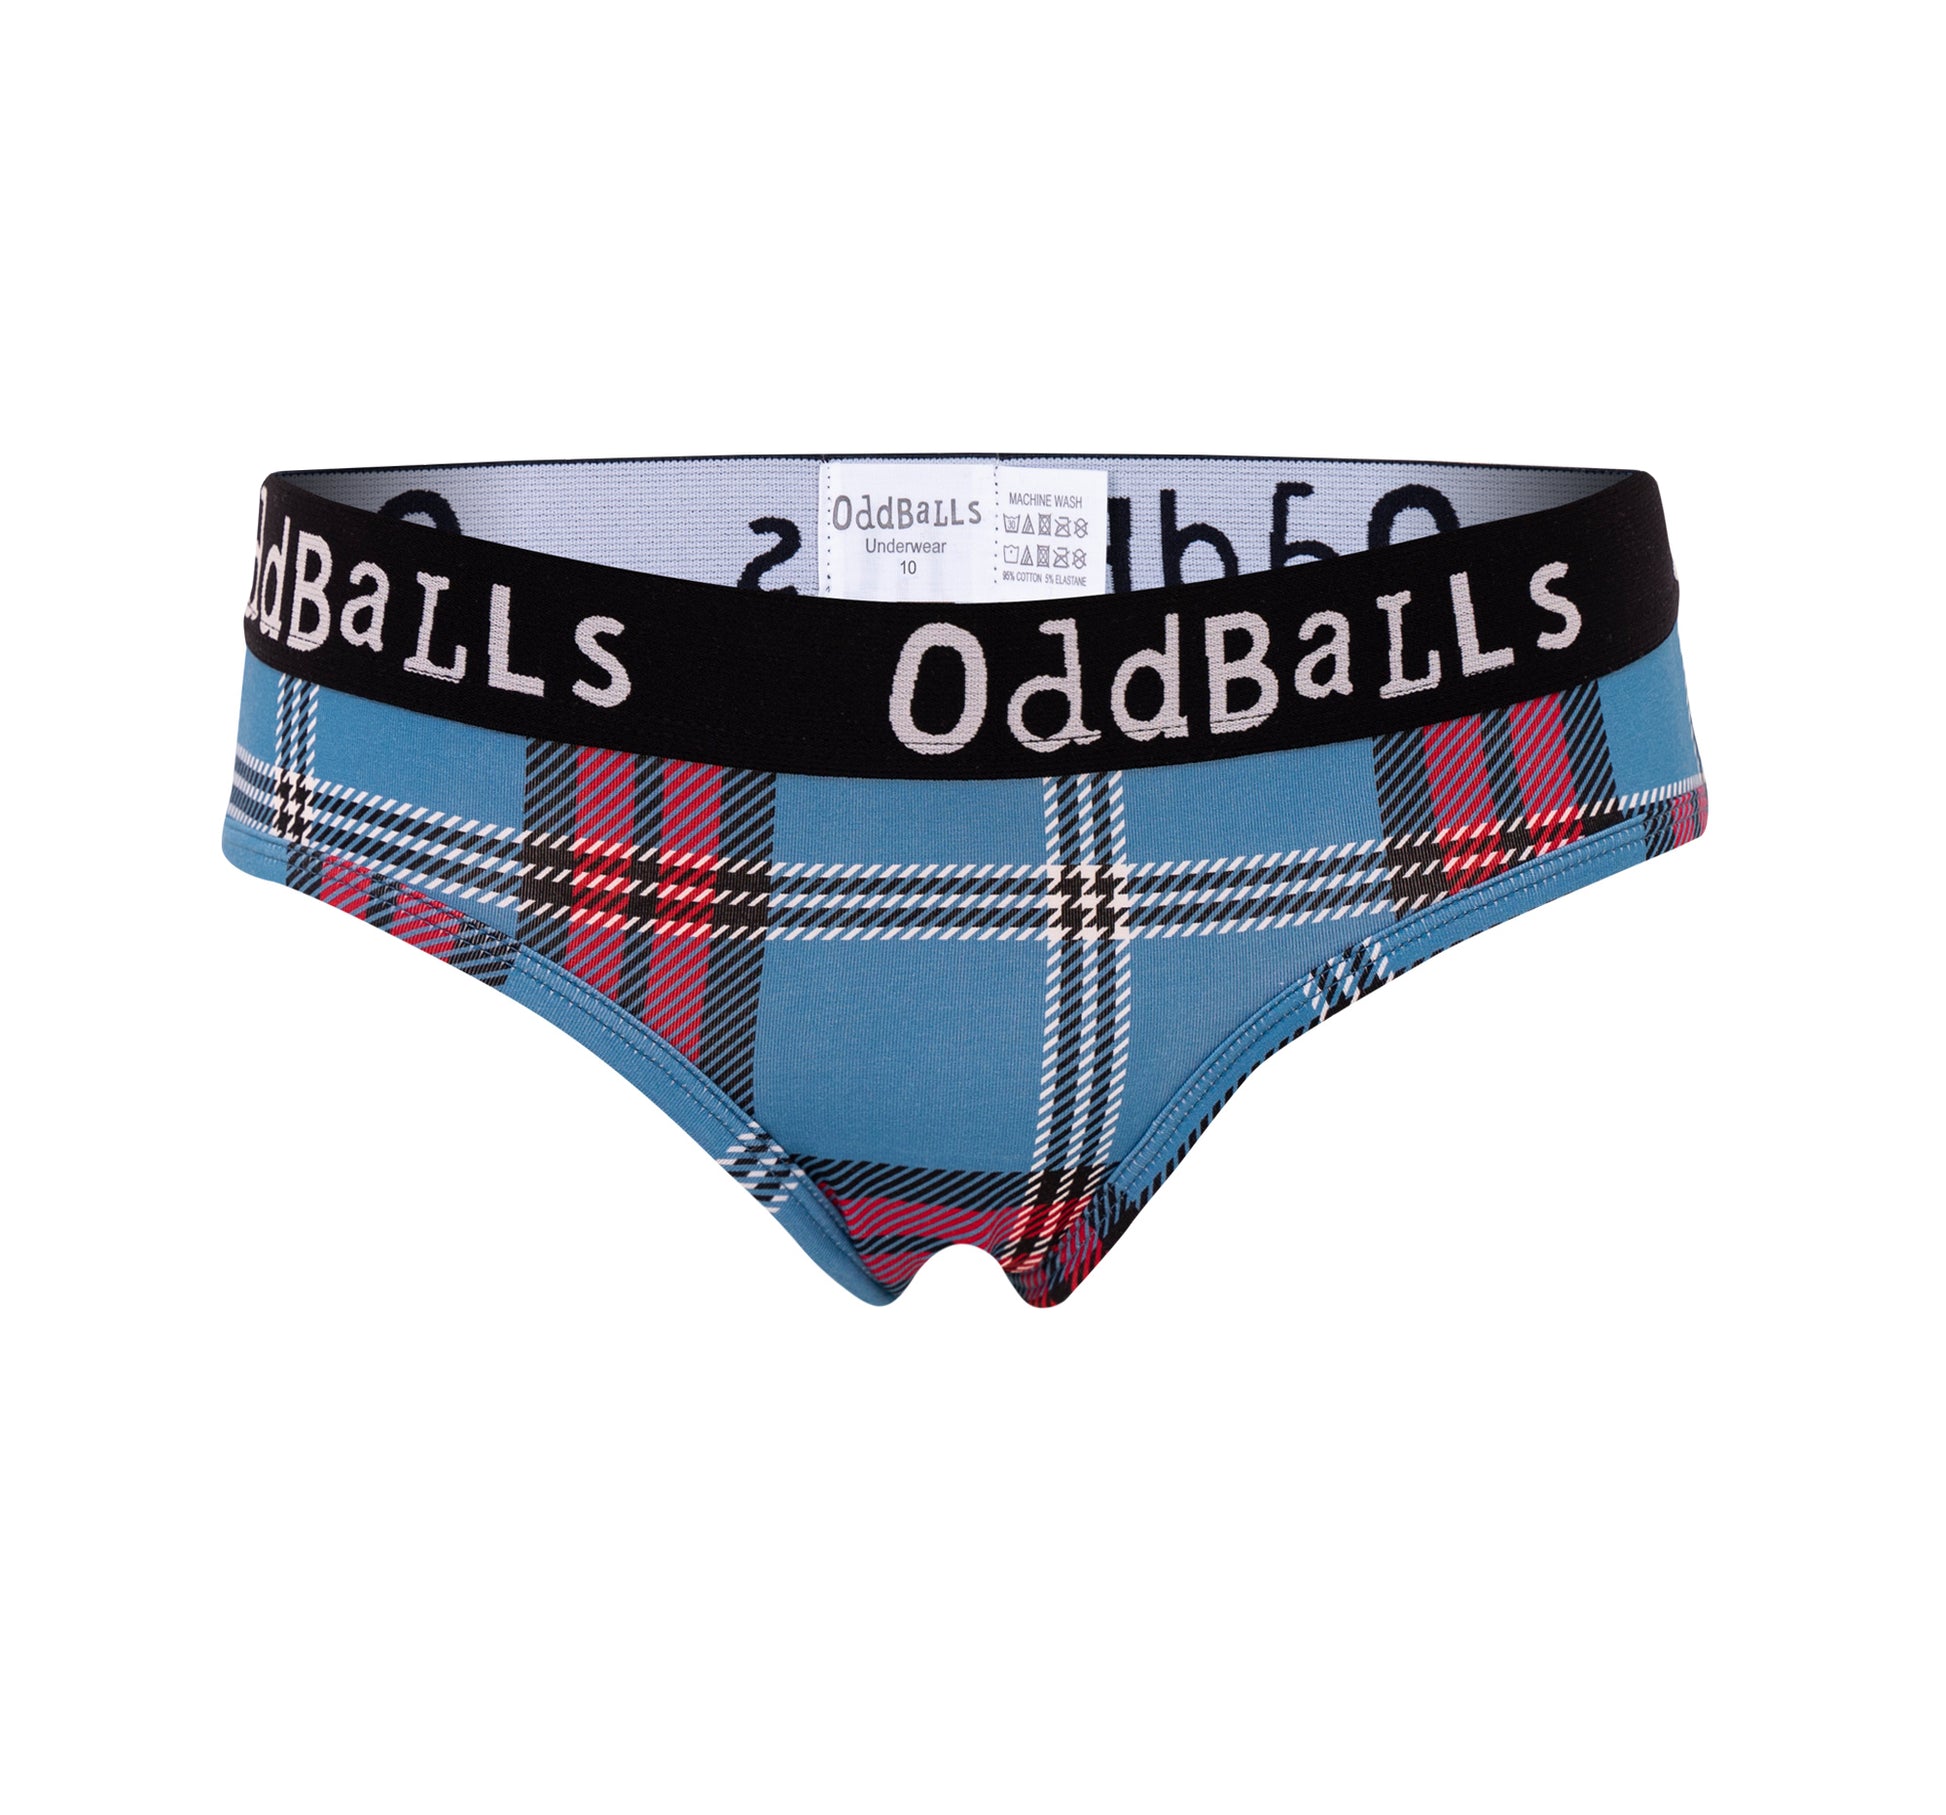 OddBalls - Mens Briefs & Socks Monthly Subscription